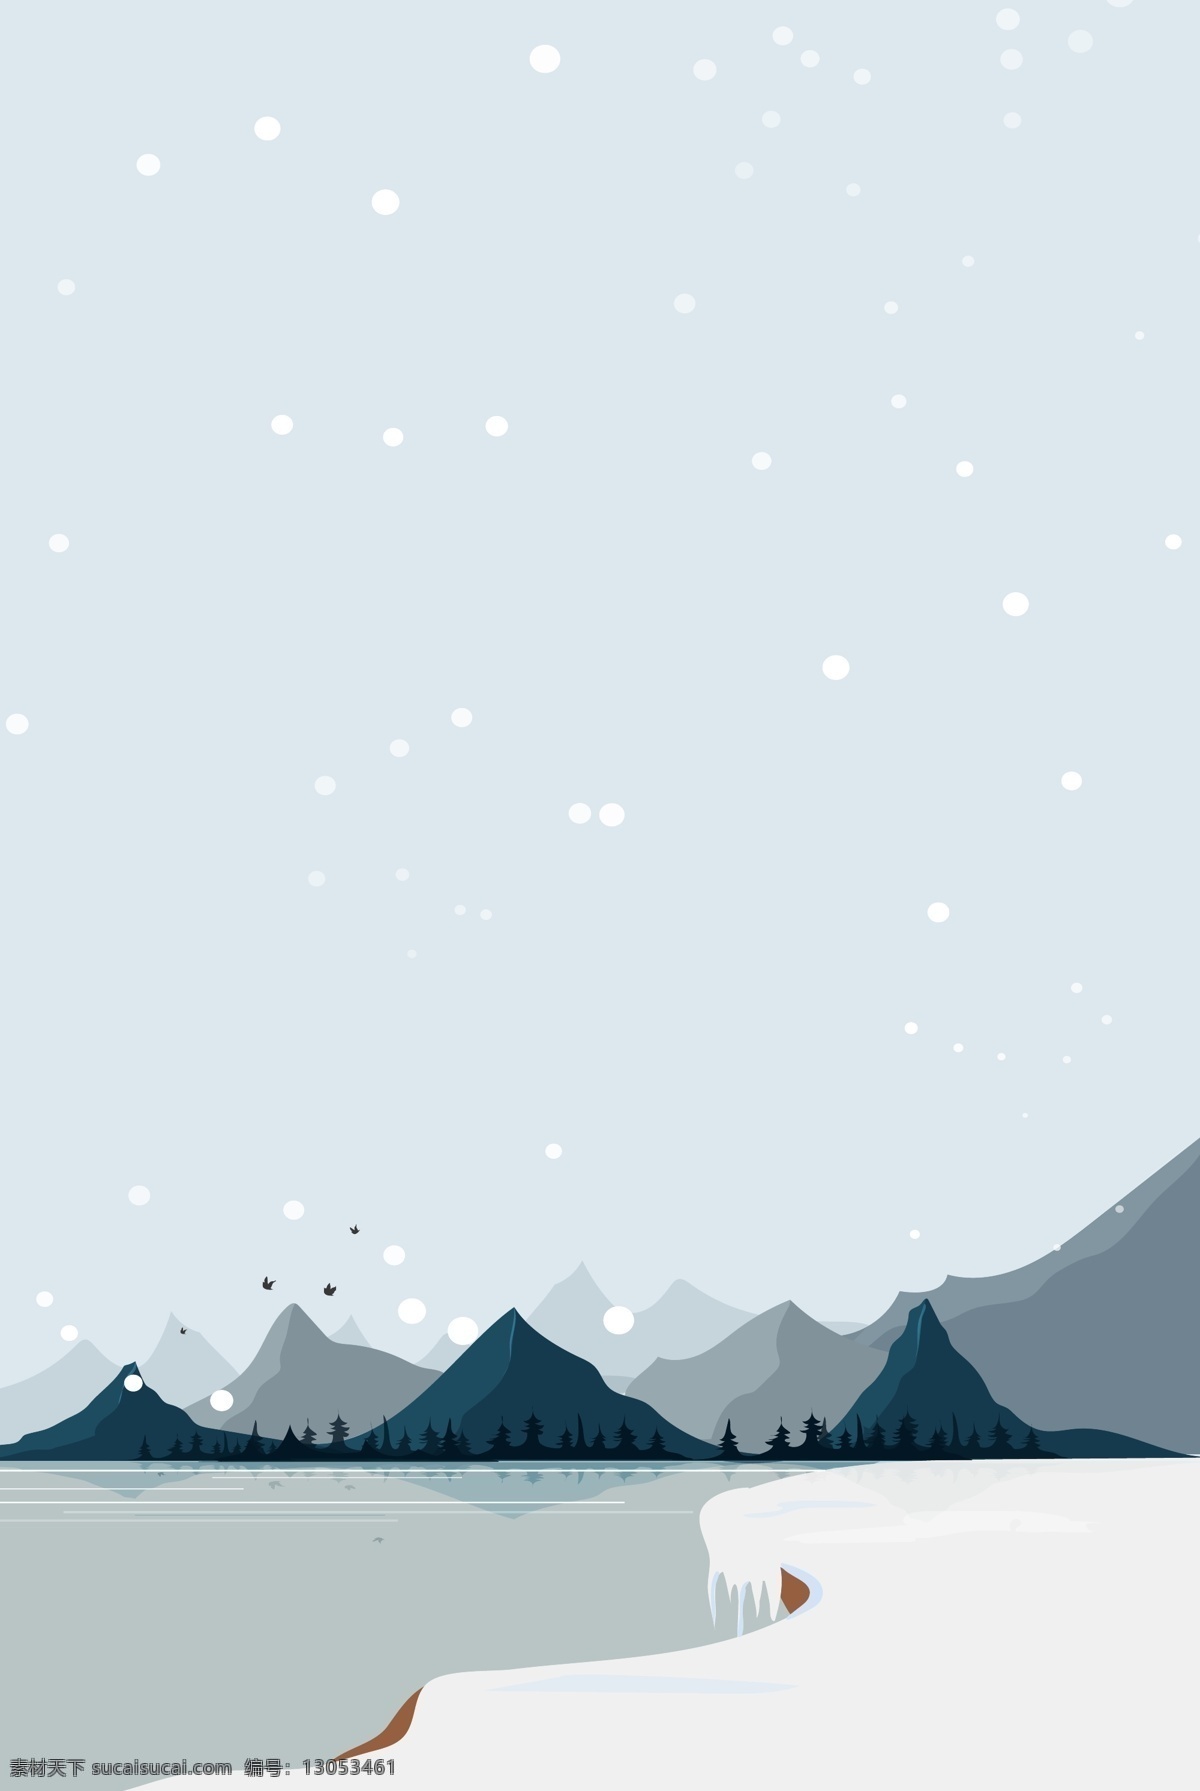 卡通 冬至 节气 雪景 背景 雪地背景 手绘背景 蓝色背景 蓝天白云 远山背景 下雪天背景